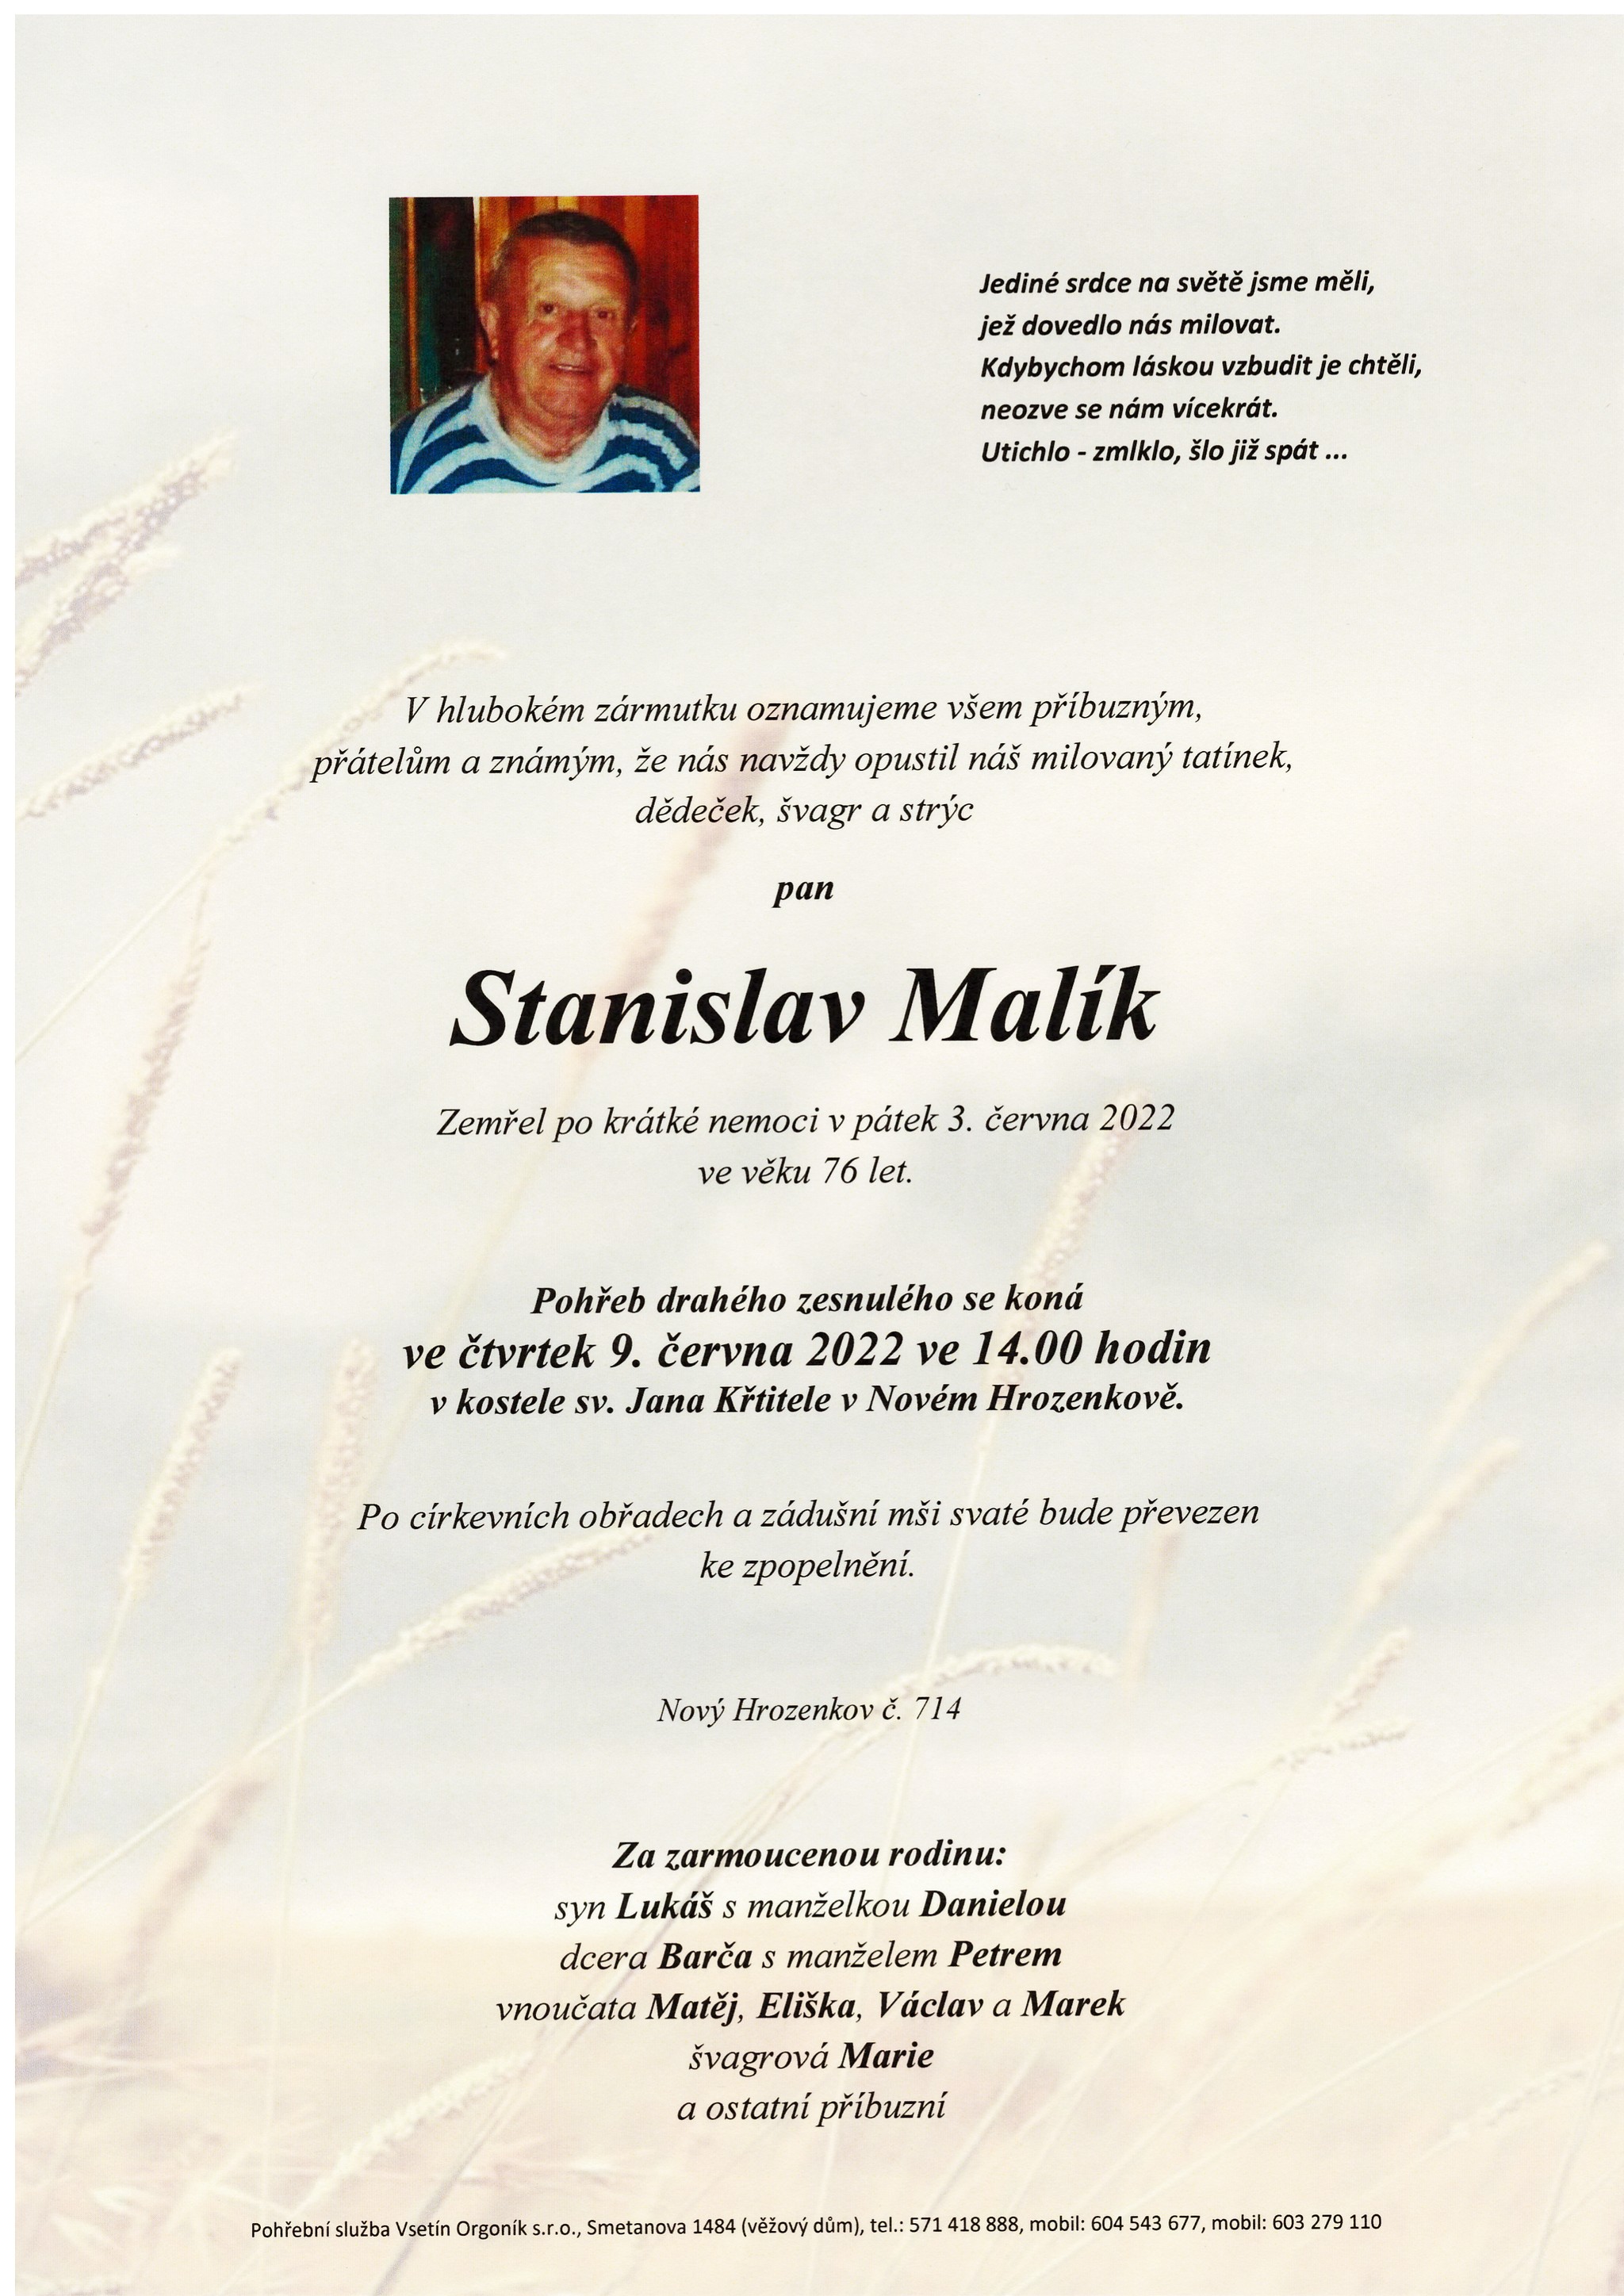 Stanislav Malík